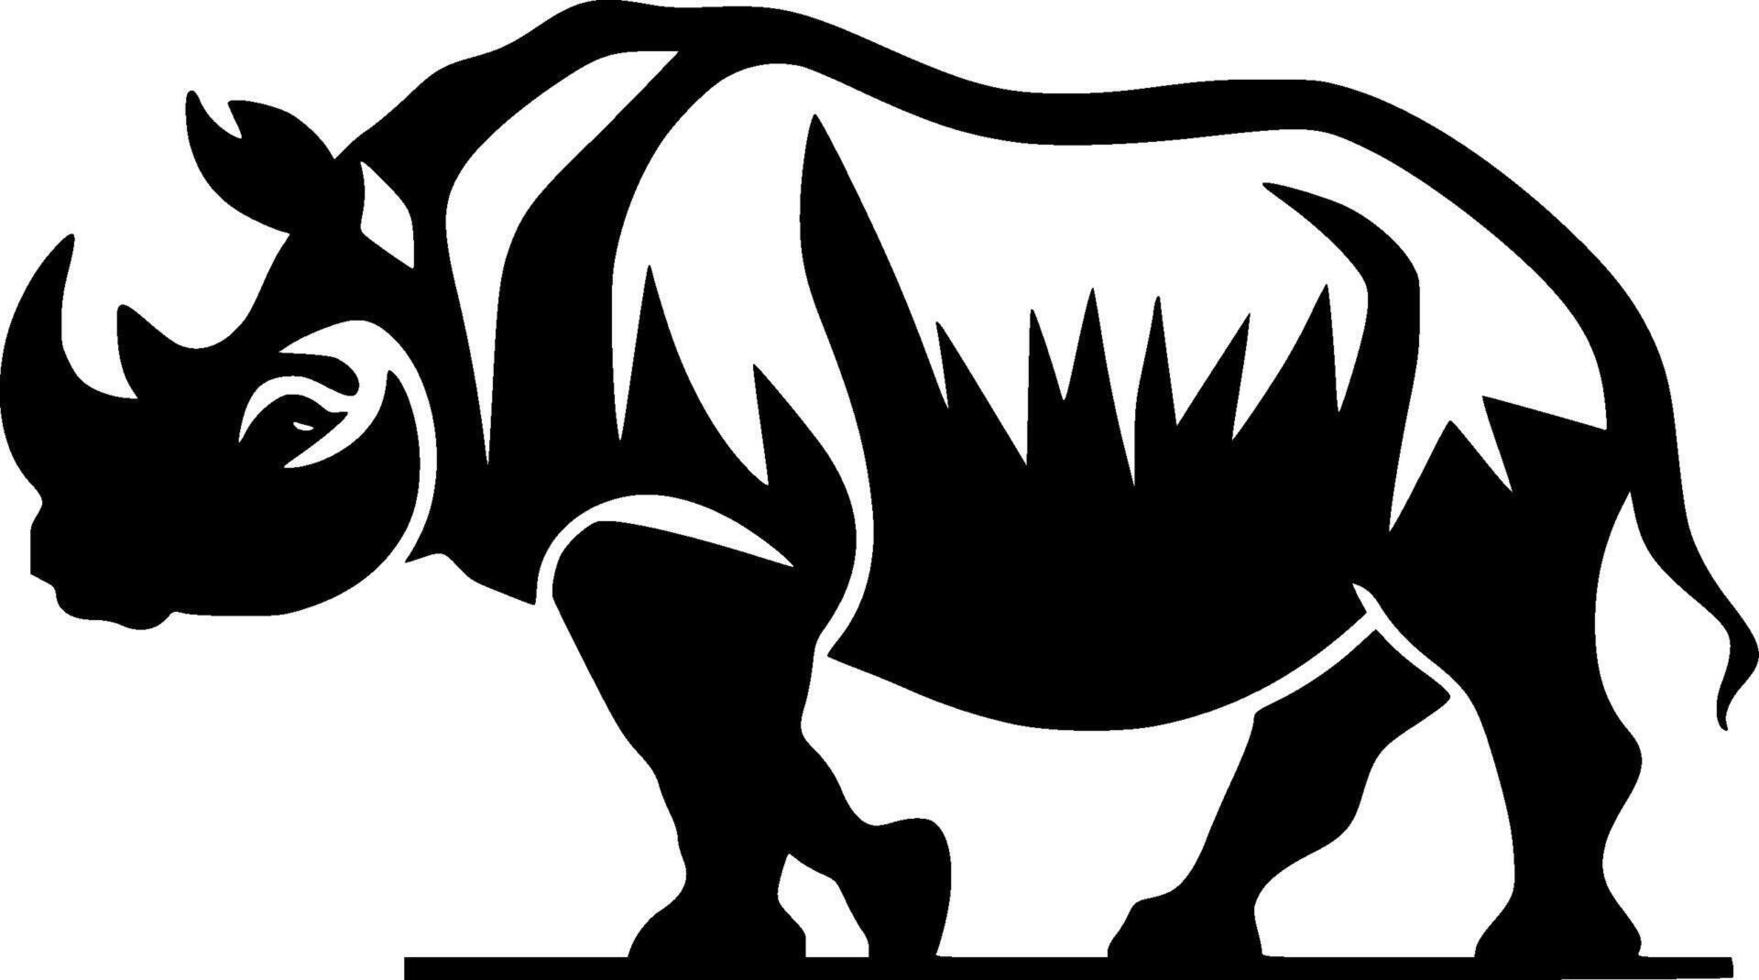 rinoceronte - Alto qualidade vetor logotipo - vetor ilustração ideal para camiseta gráfico